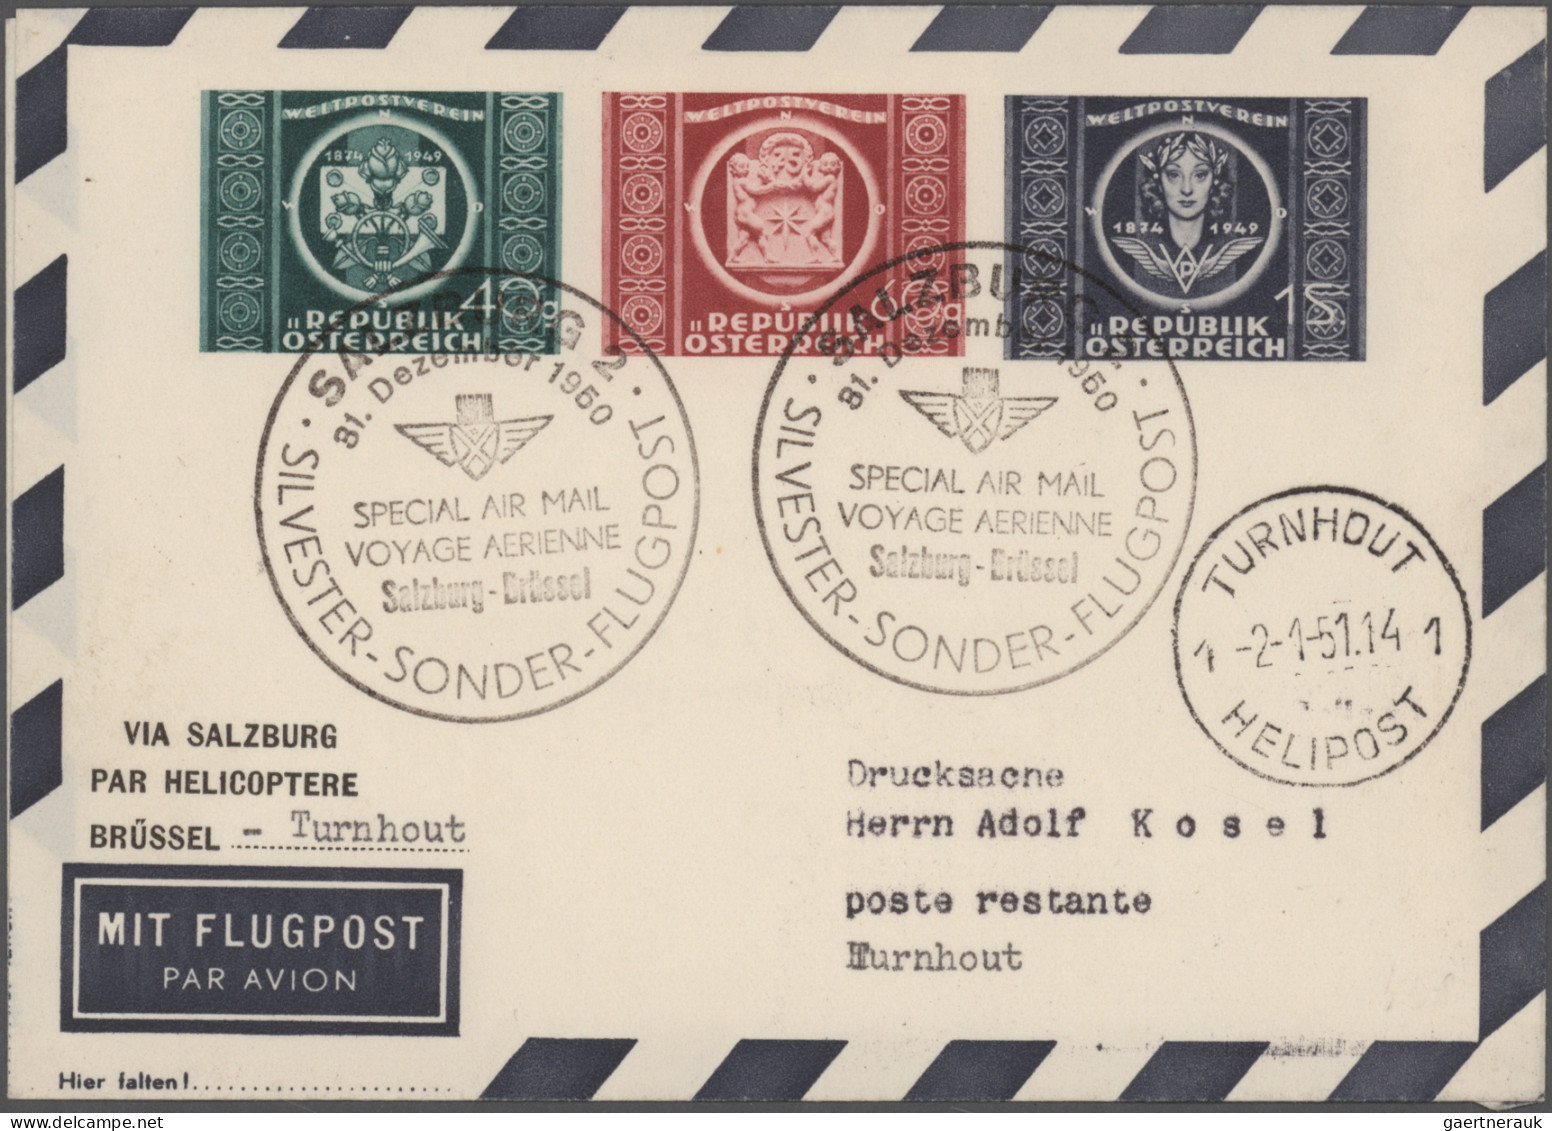 Österreich - Privatganzsachen: 1948/1959, Sammlung von 35 gebrauchten und ungebr